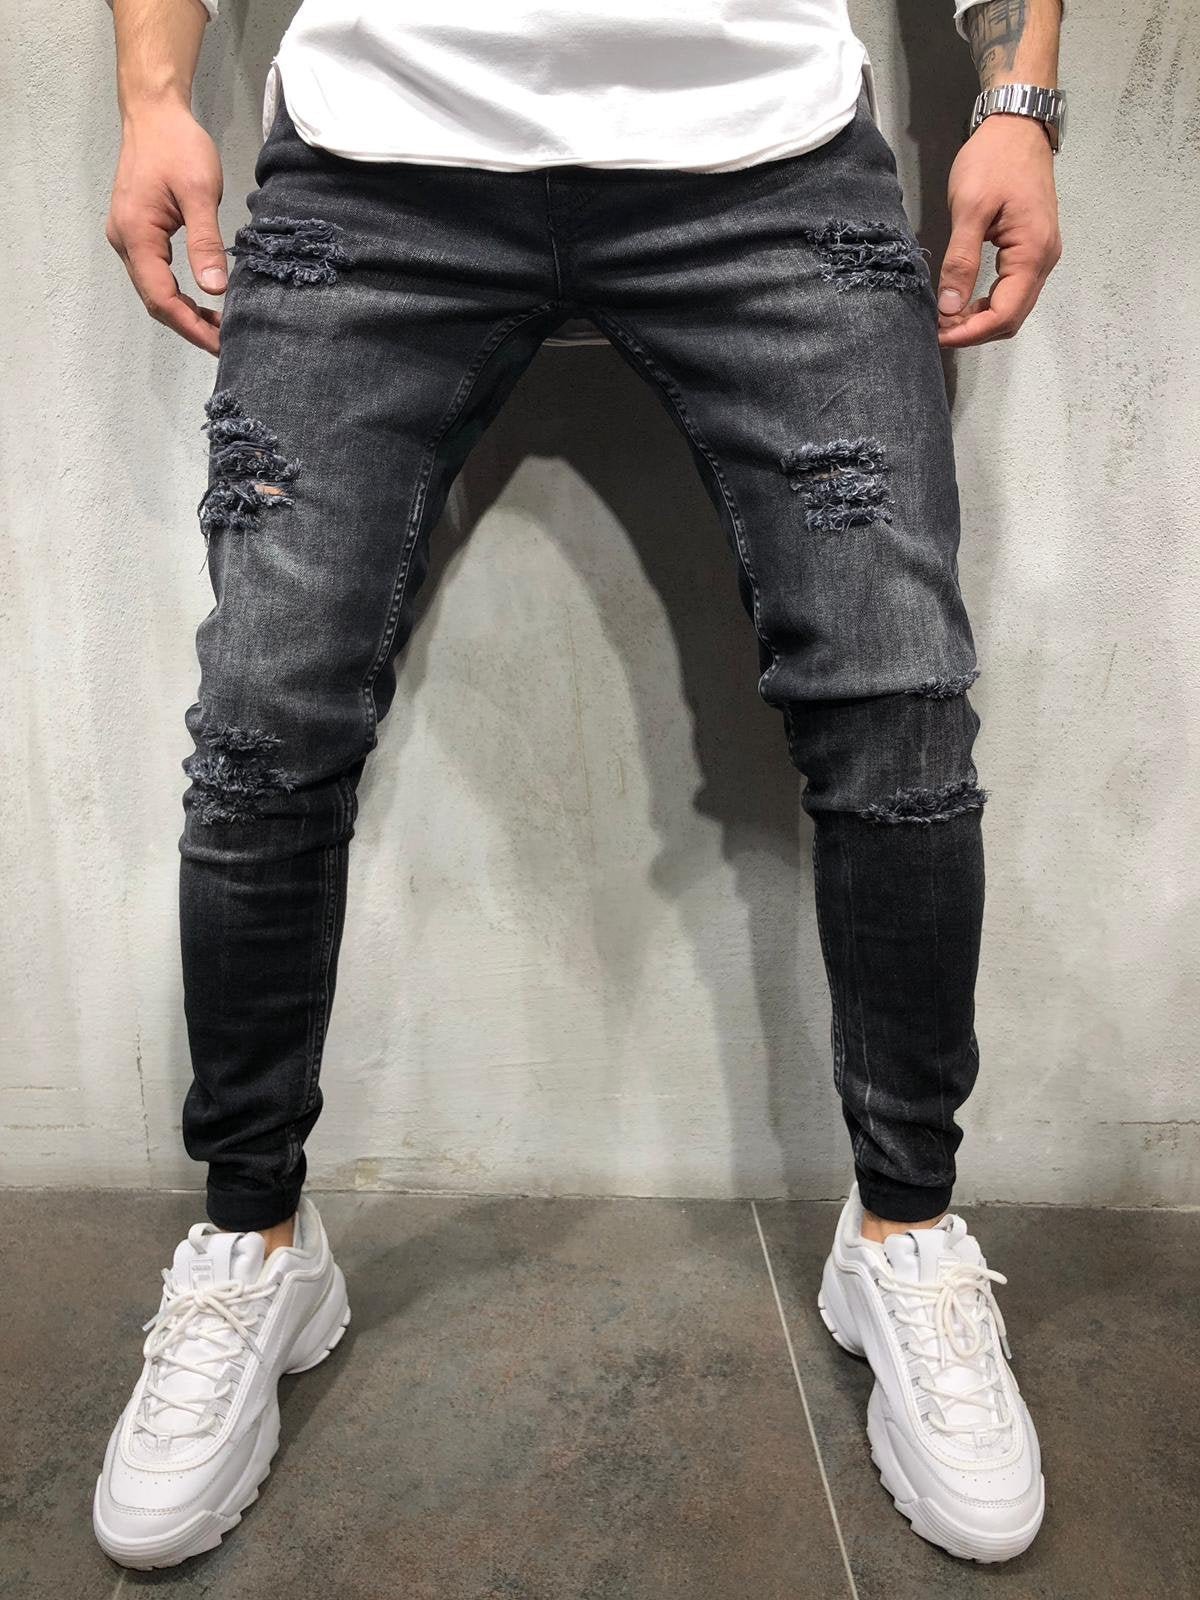 https://www.sneakerjeans.com/cdn/shop/products/sneakerjeans-black-ripped-skinny-jeans-a237-219732_1200x.jpg?v=1680678293